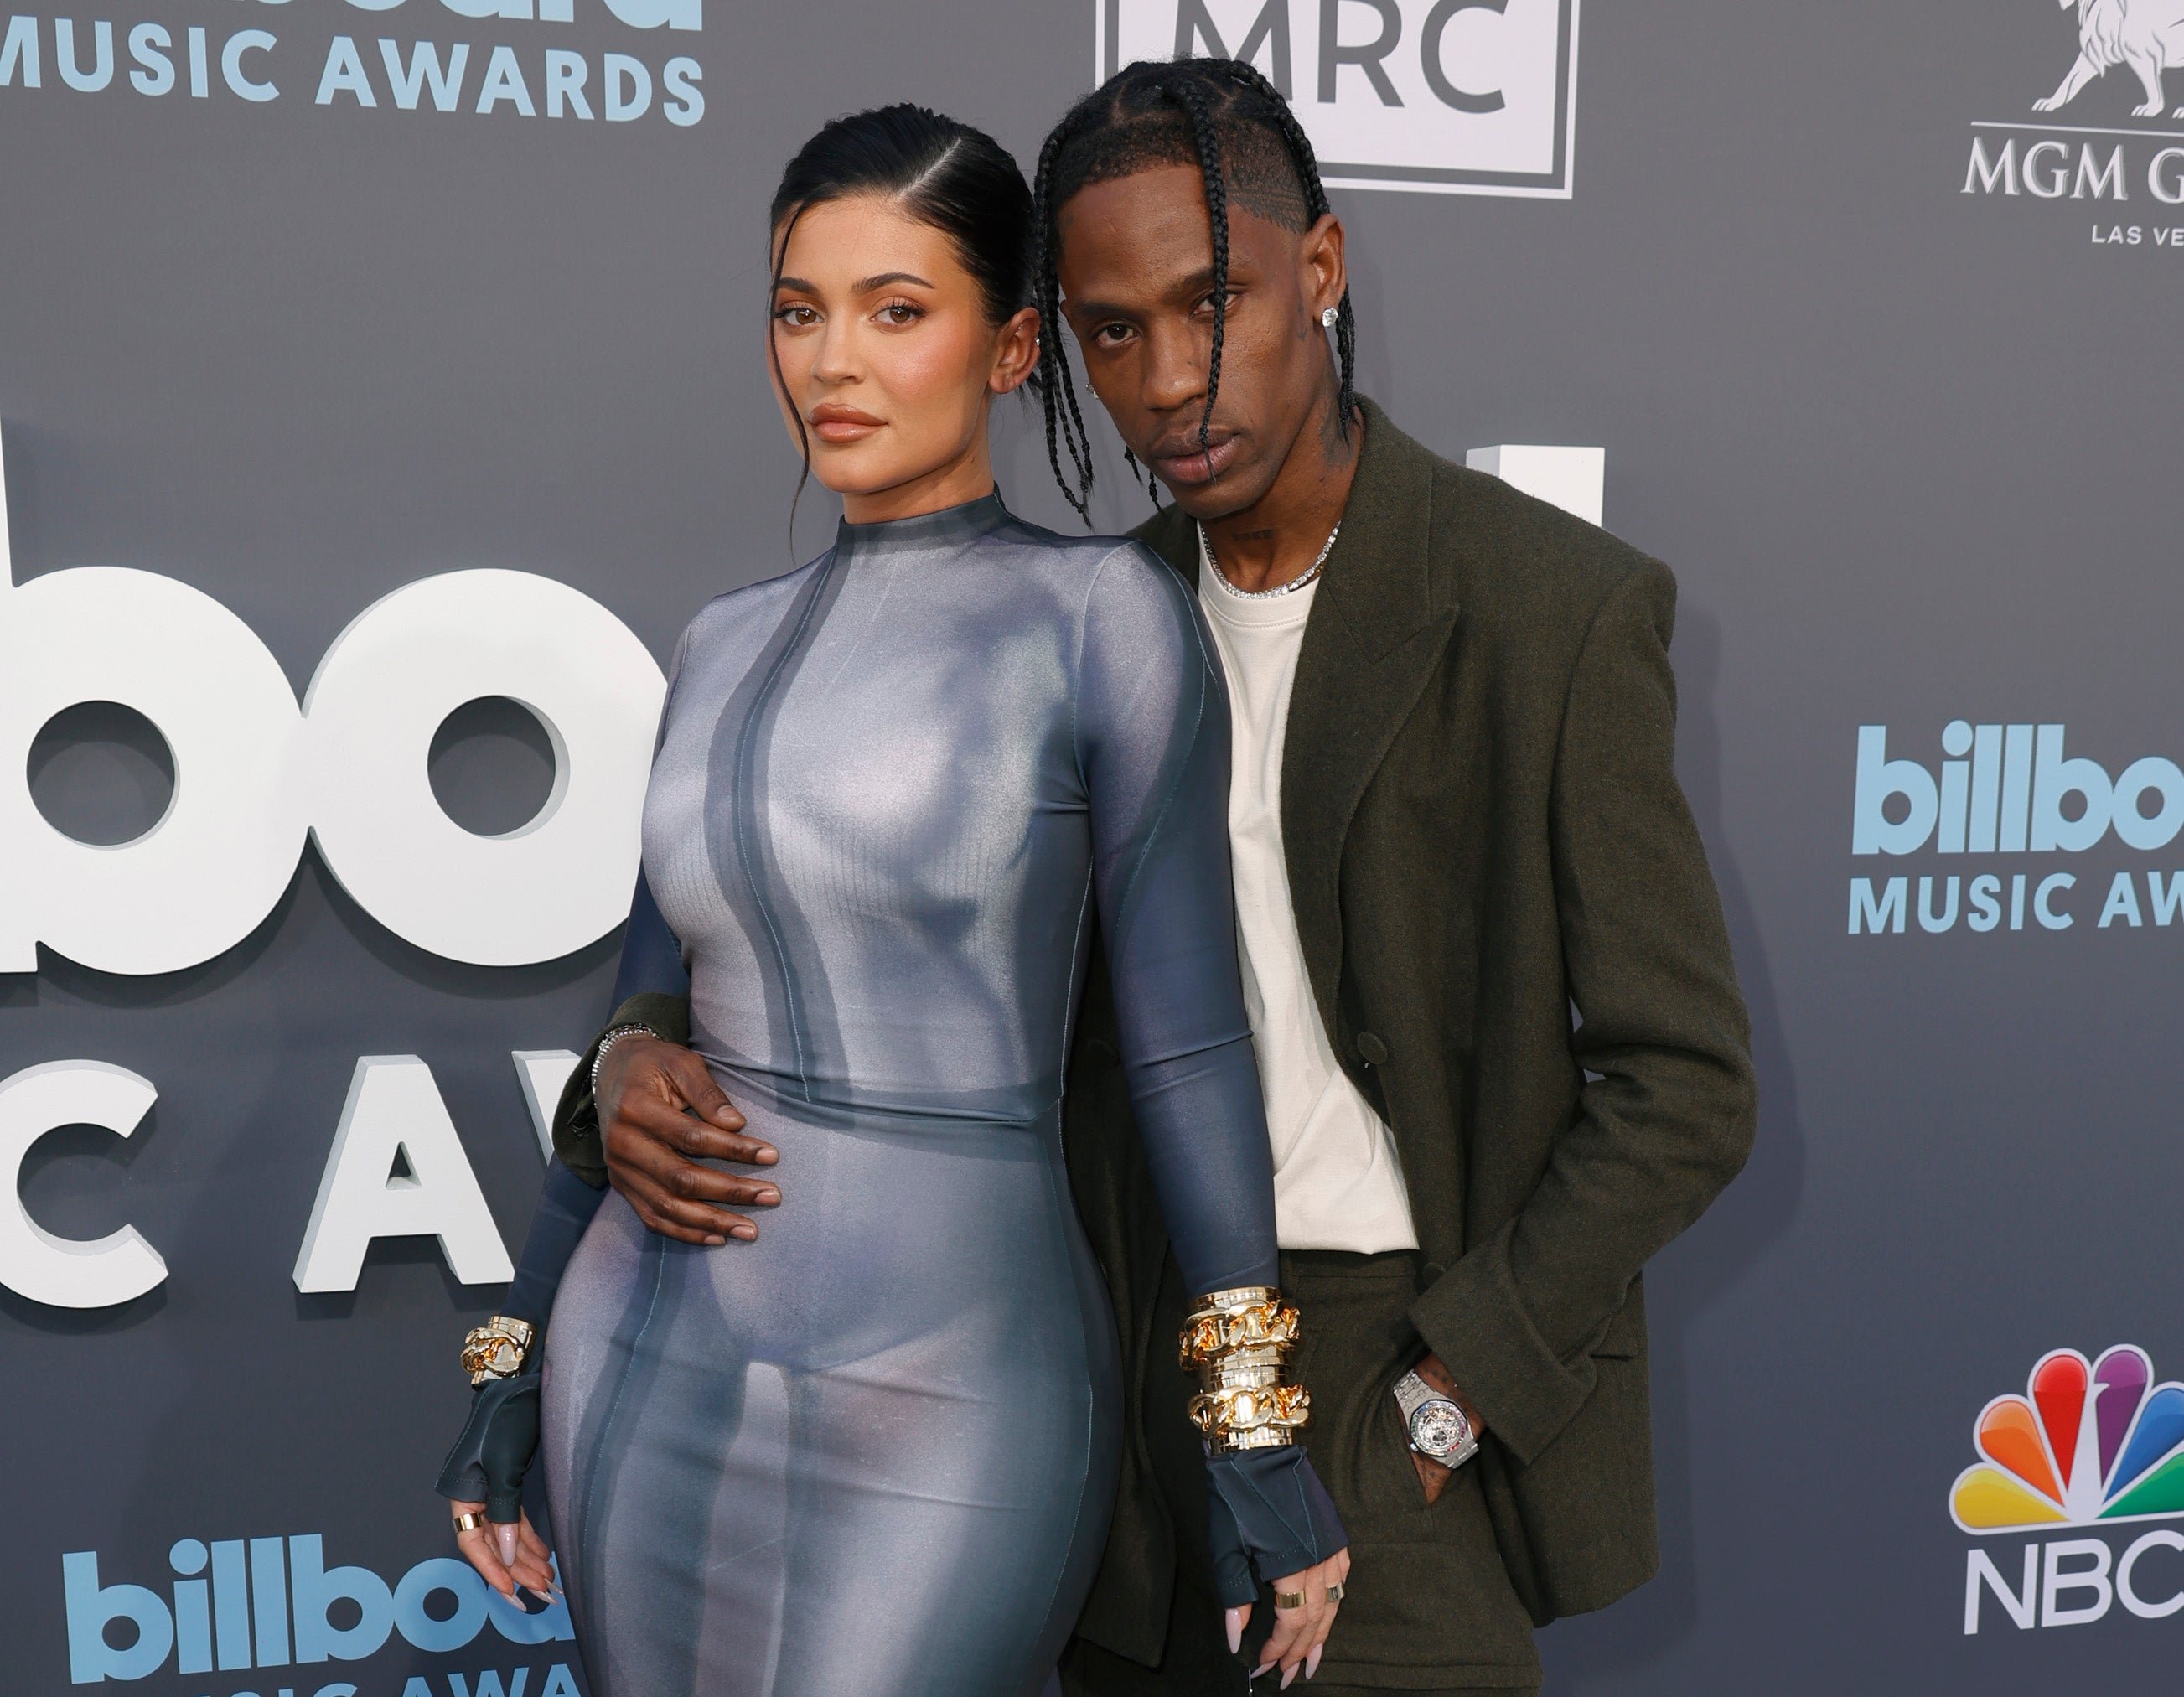 Kylie Jenner, Stormi Webster and Travis Scott pose together on red carpet at Billboard Music Awards